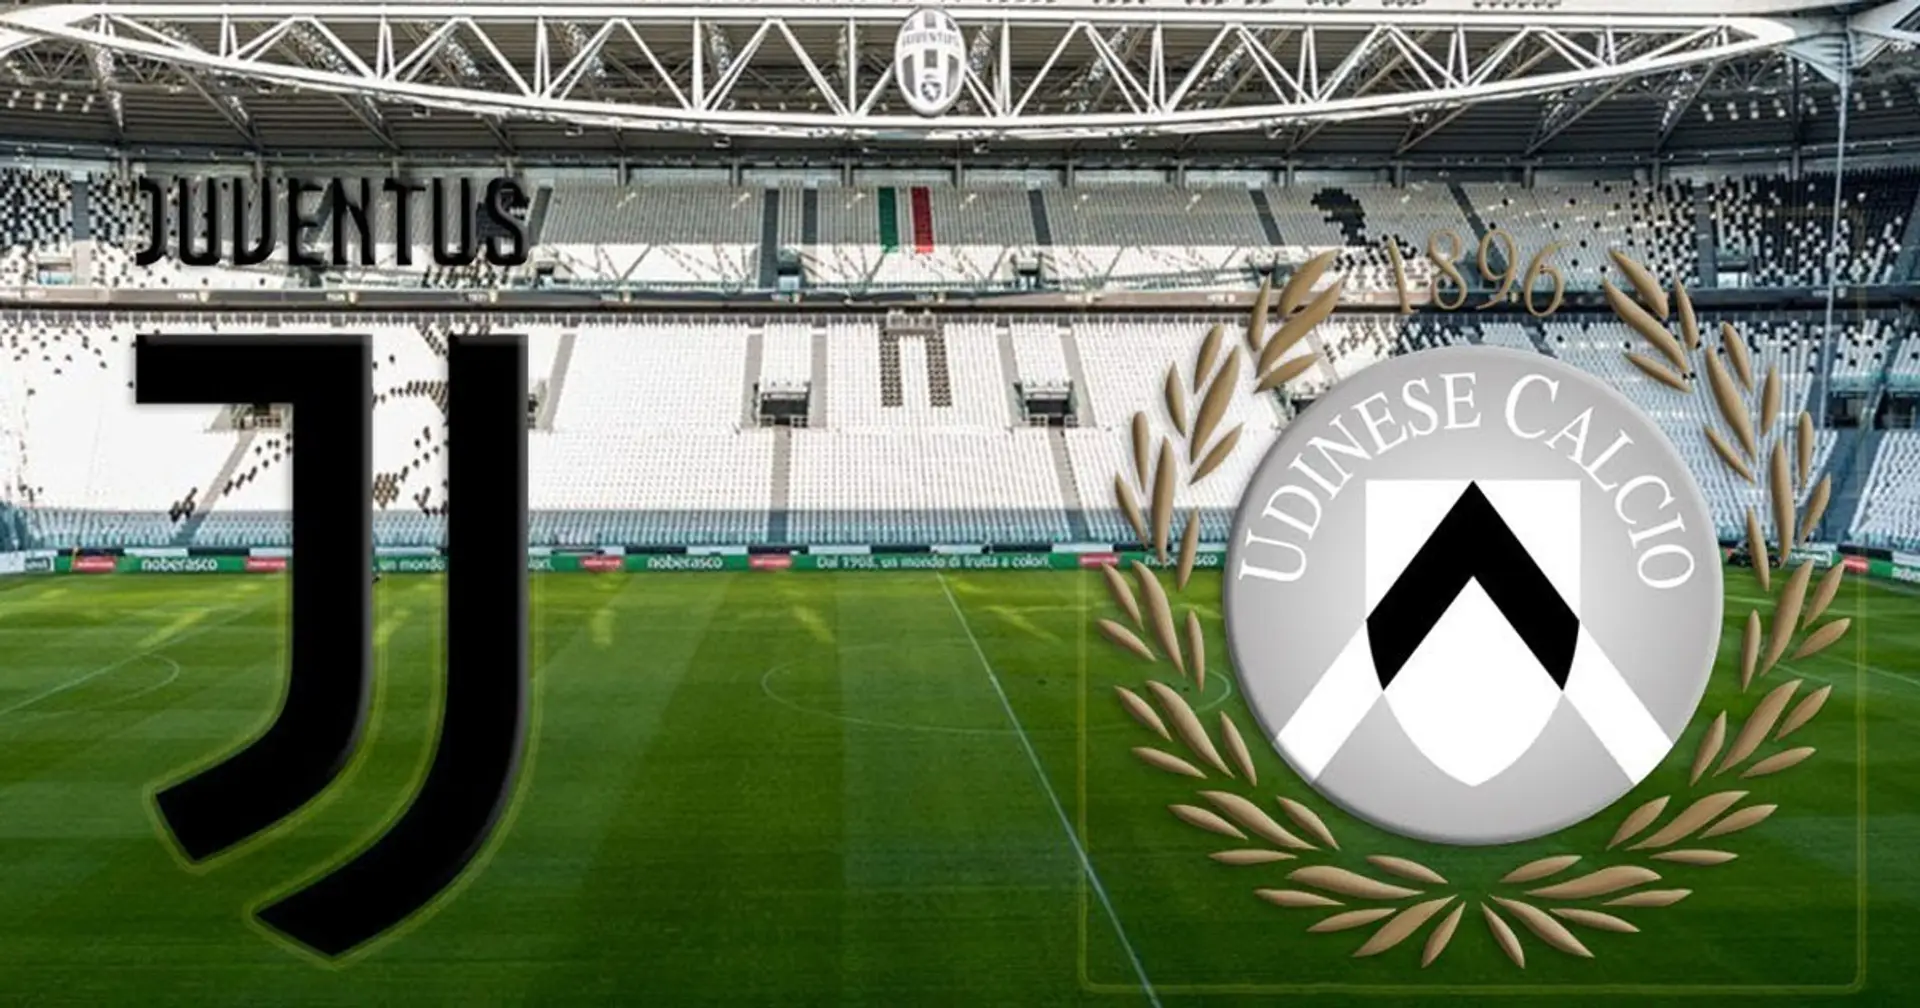 Juventus vs Udinese 4-1: è tornata la 'Vecchia Signora', le mie pagelle e i commenti ai singoli